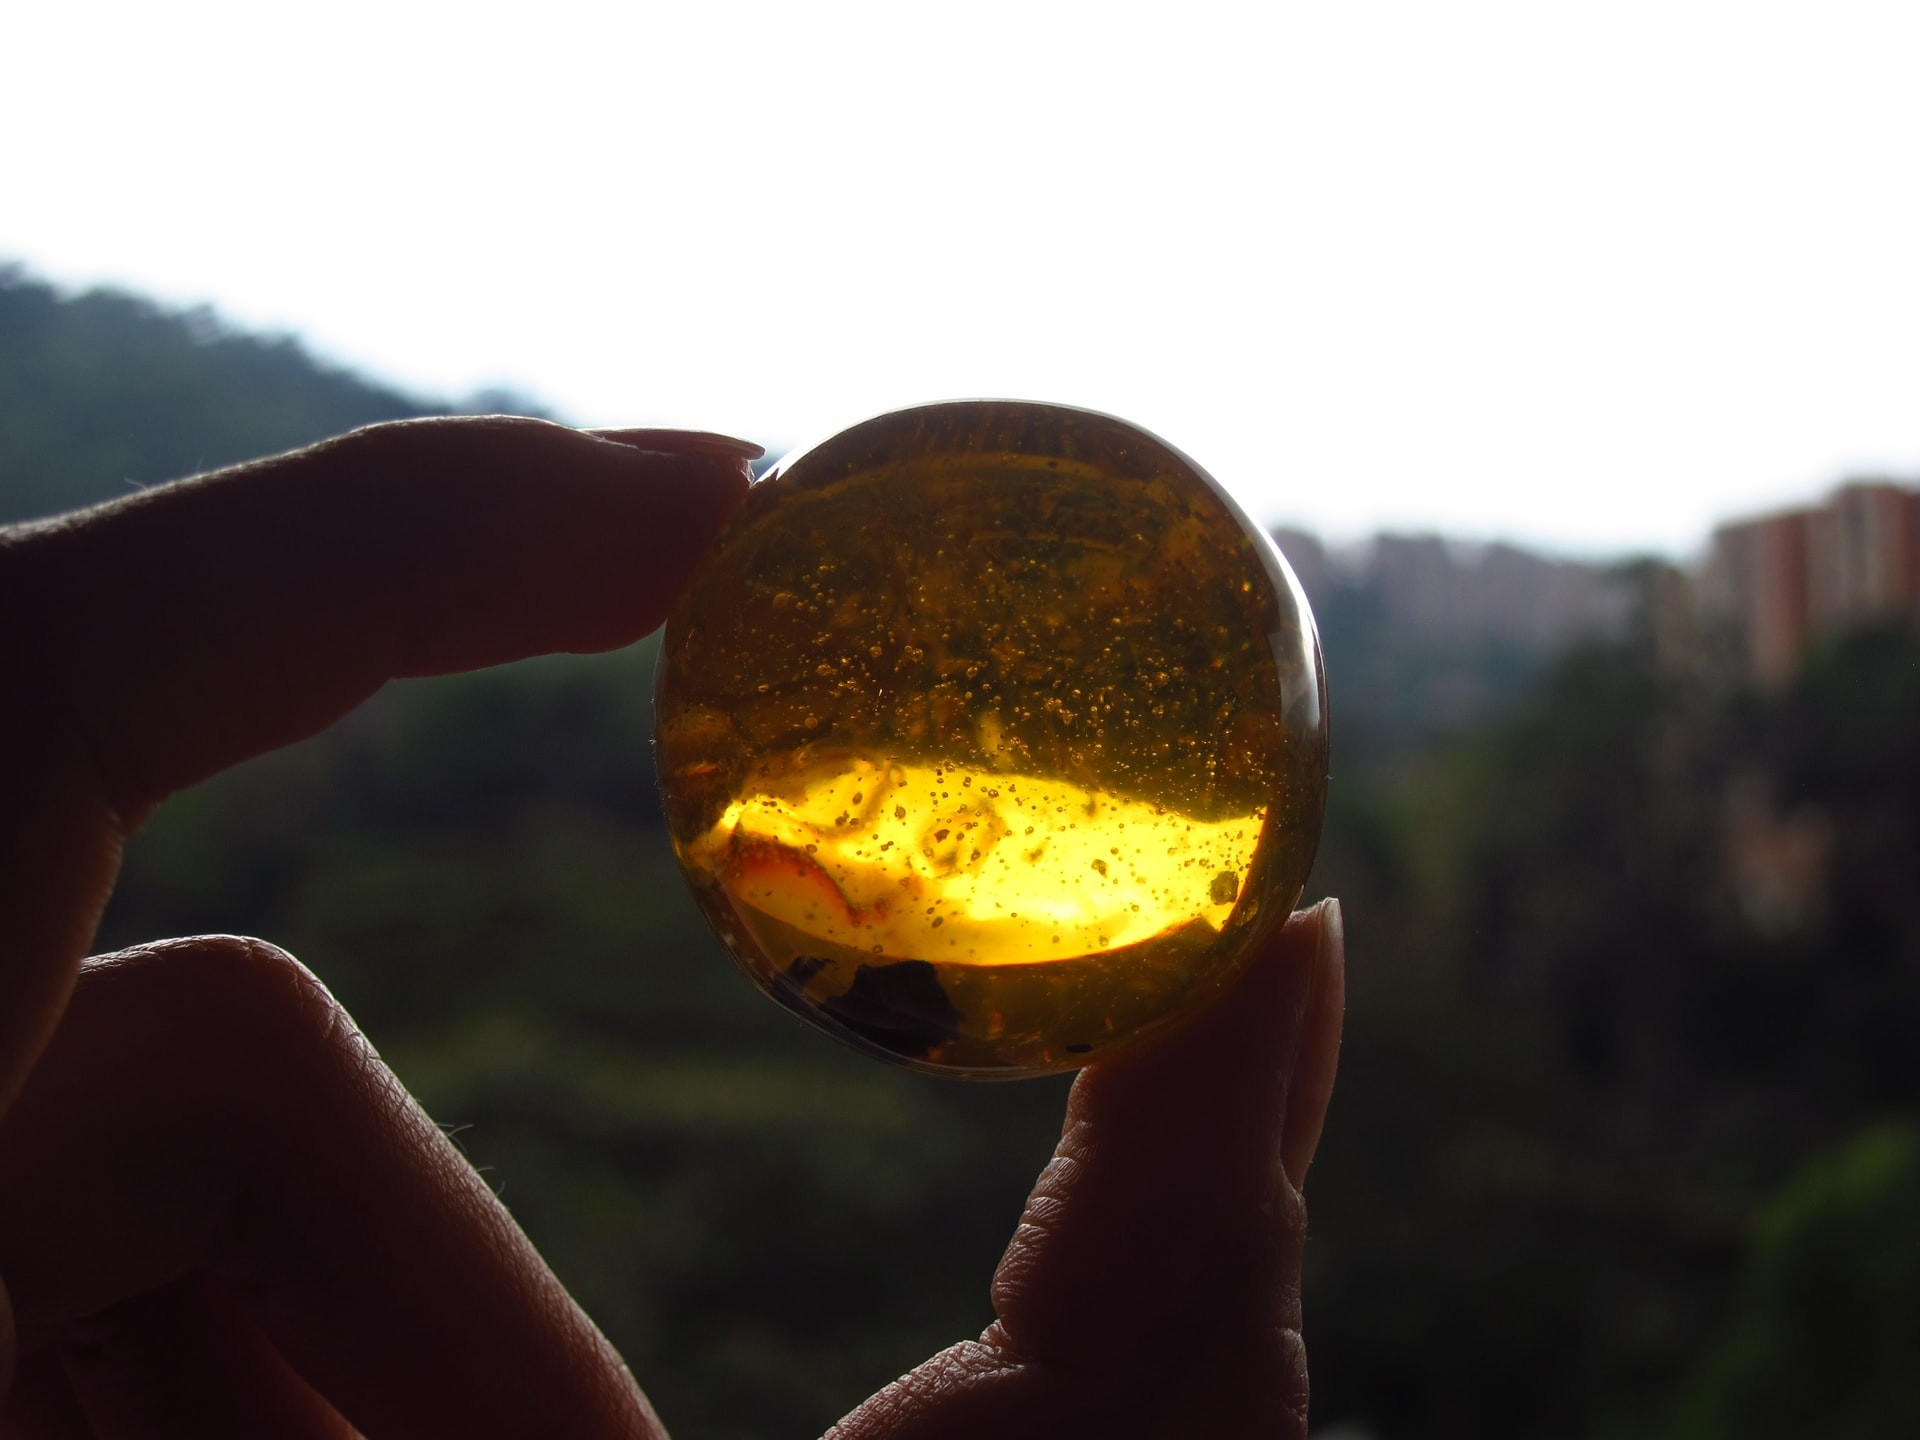 O âmbar é uma resina vegetal fossilizada muito usada em jóias no norte da Europa (Foto: Uns)